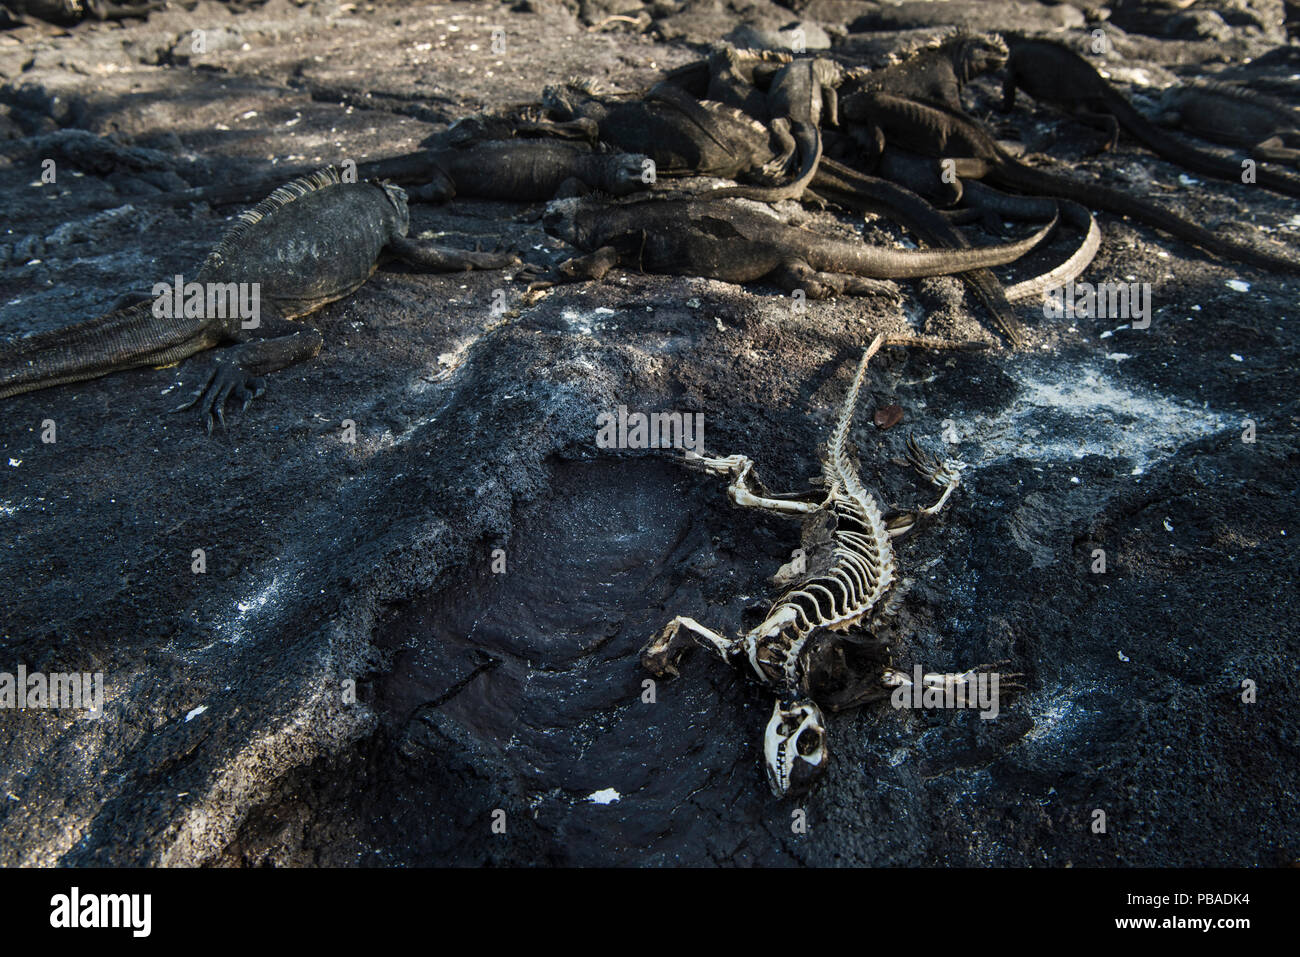 Iguane Marine (Amblyrhynchus cristatus) crogiolarsi sulla roccia accanto a scheletro di uno che morti di fame. Insolitamente caldo El Nino acque hanno ucciso un sacco di alghe che è il cibo per questi iguana. Fernandina Island, Galapagos, aprile 2016. Foto Stock